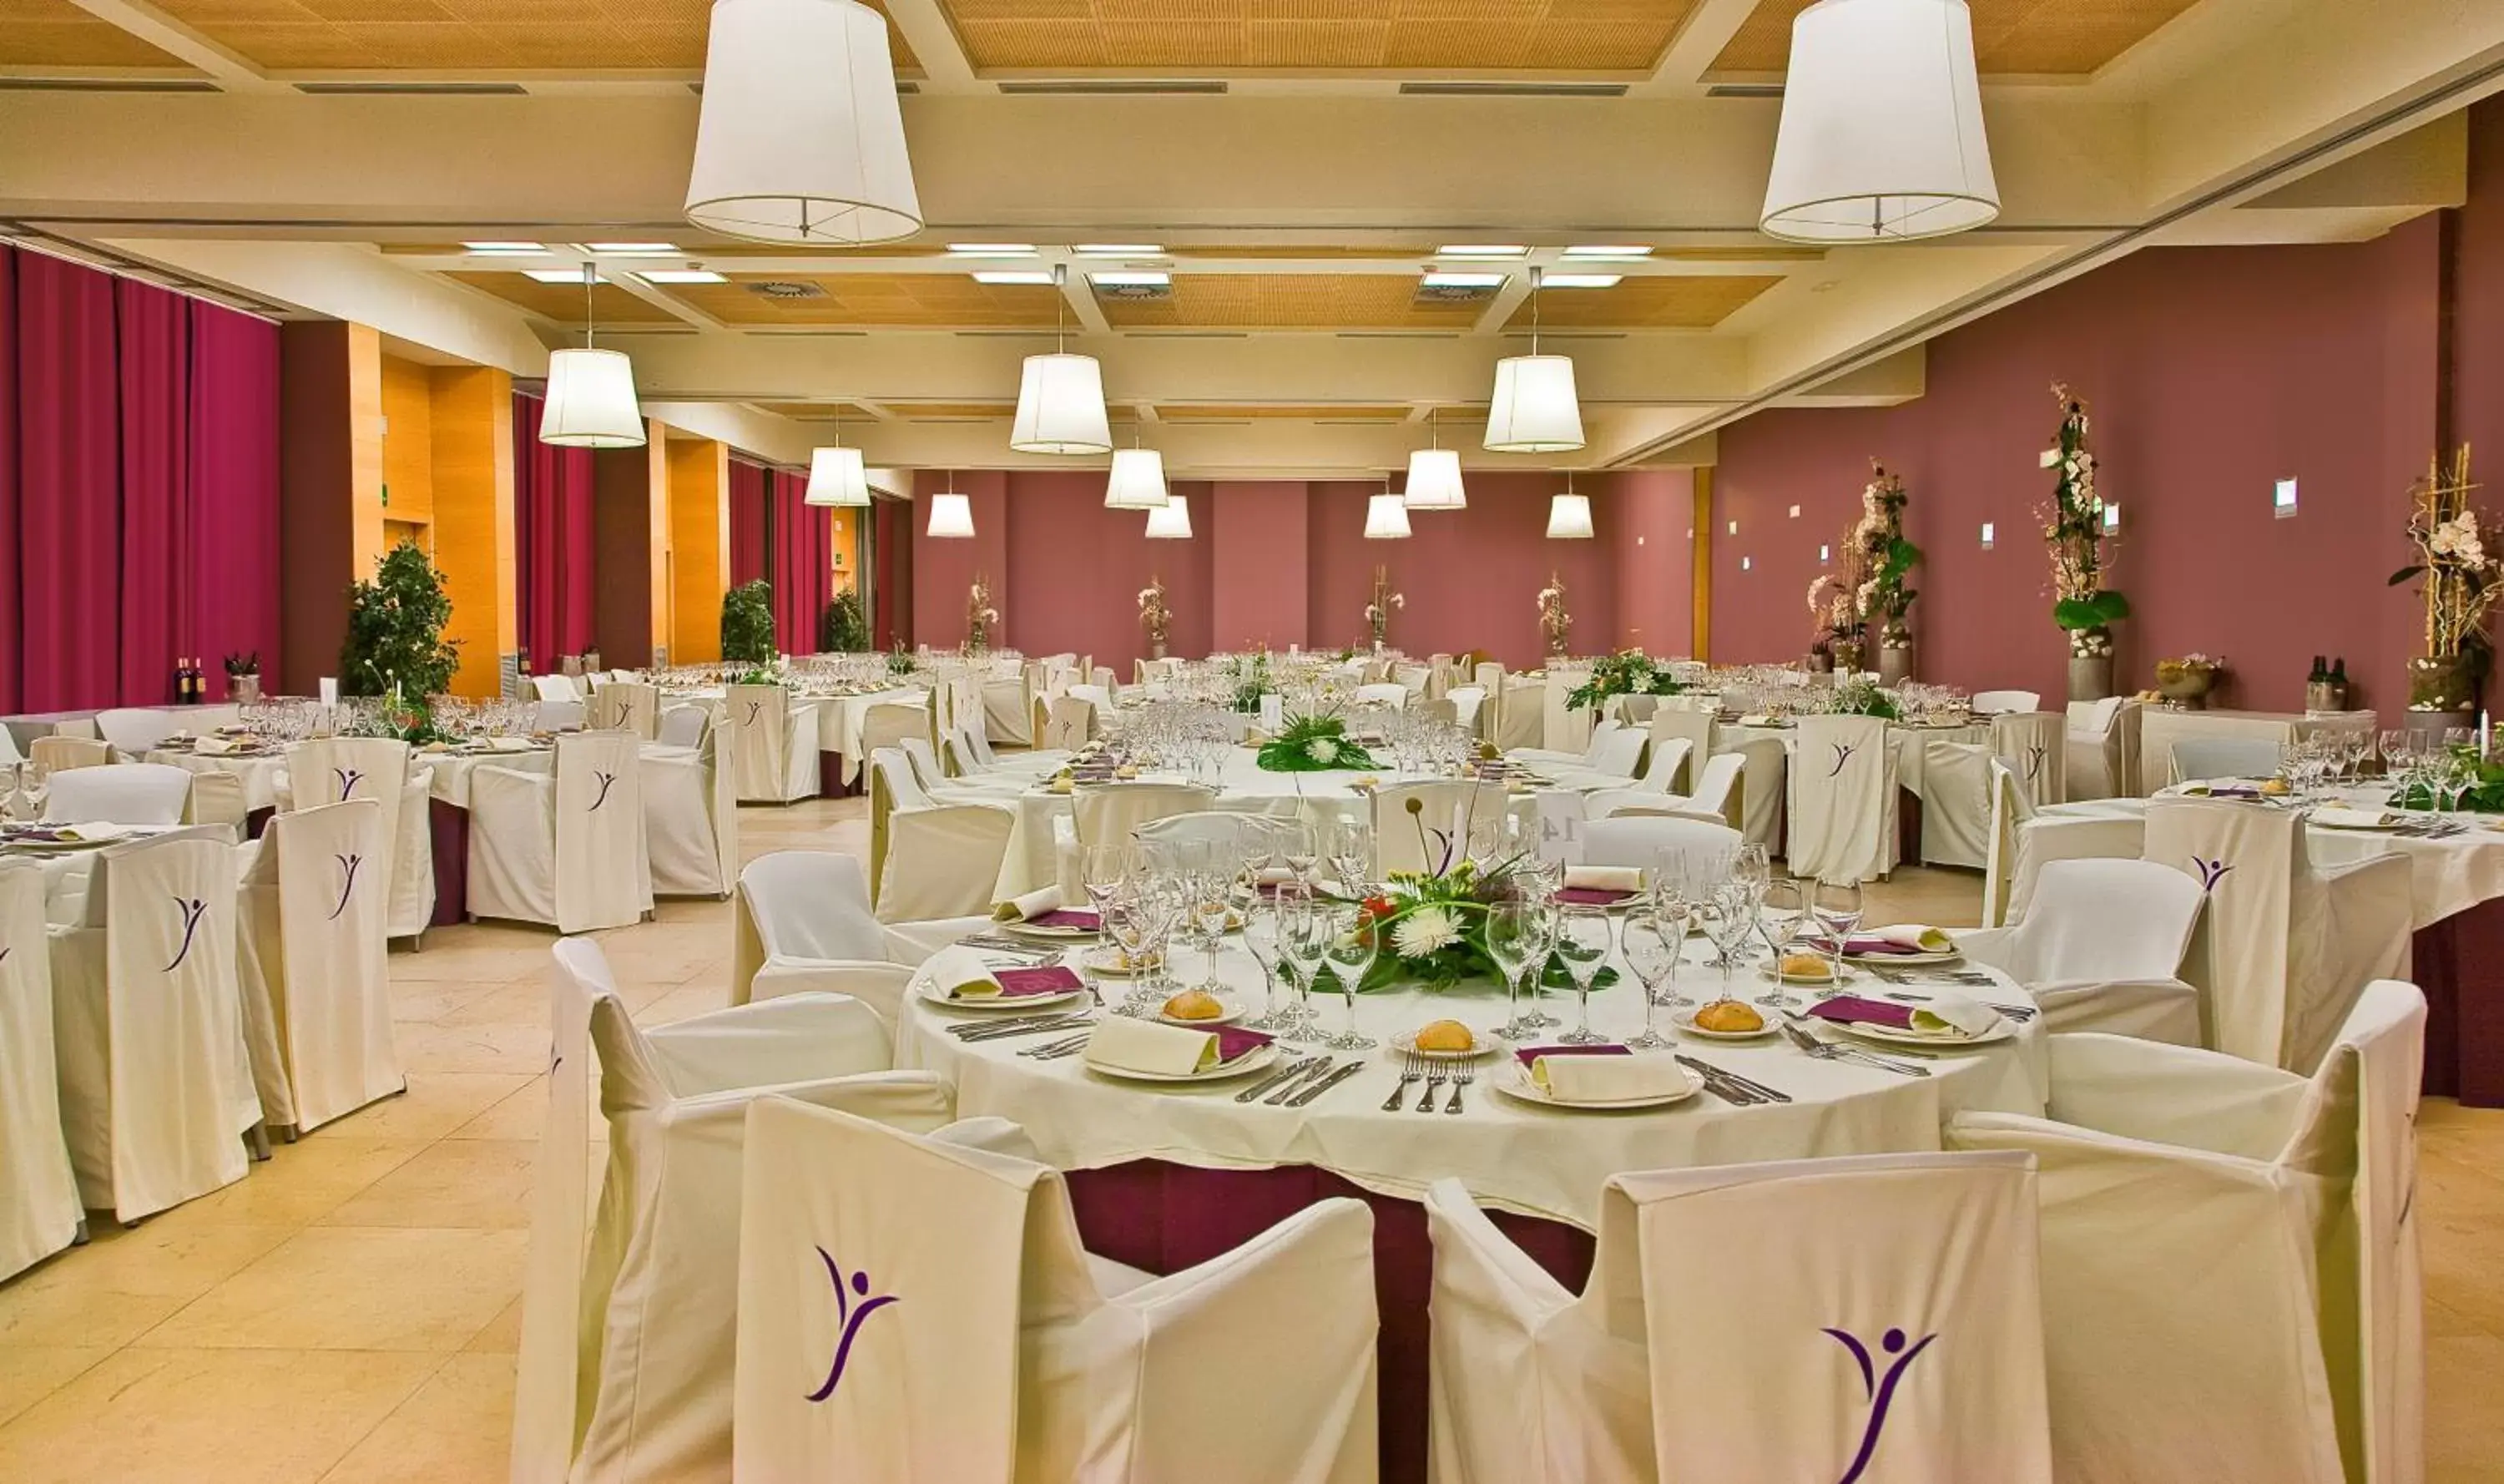 Banquet/Function facilities, Banquet Facilities in Silken Puerta Valencia